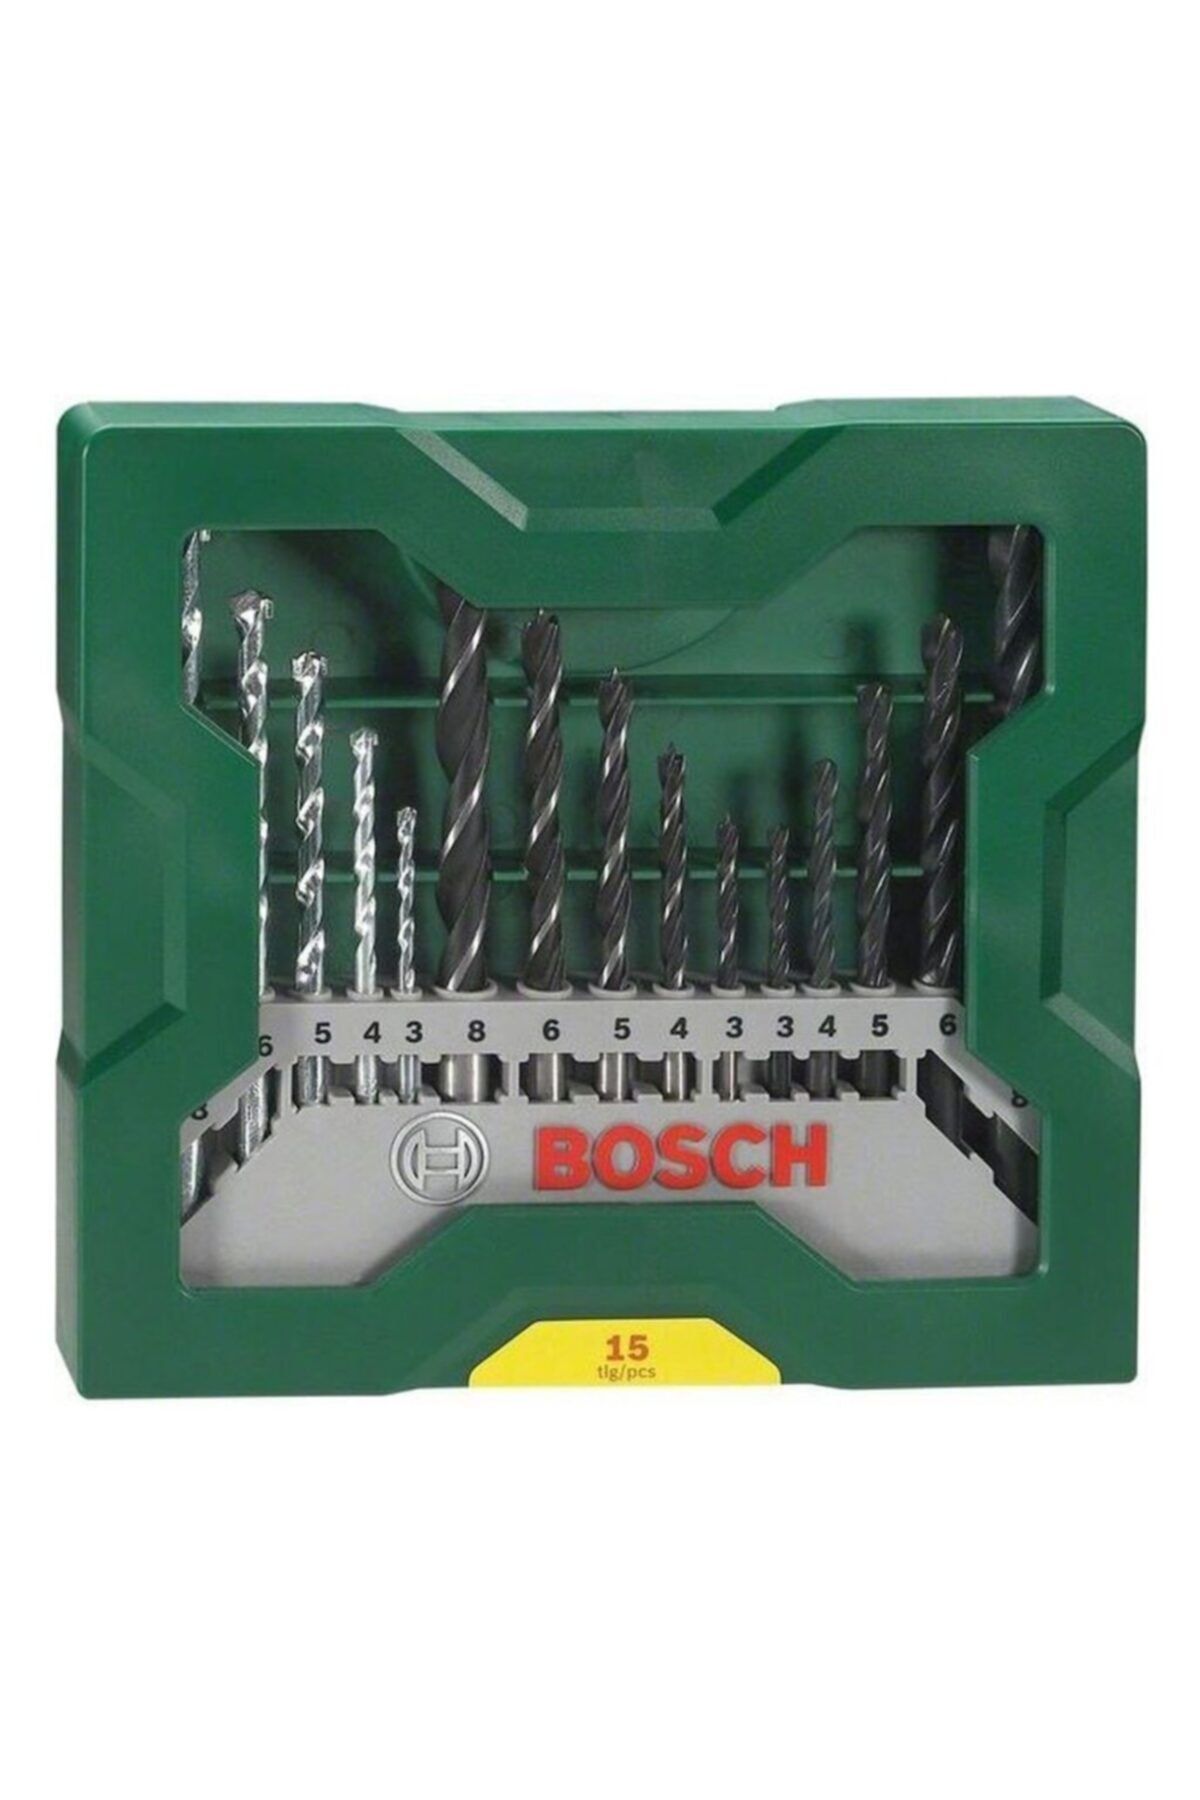 Bosch Matkap Ucu Seti X-line Mini 15 Parça